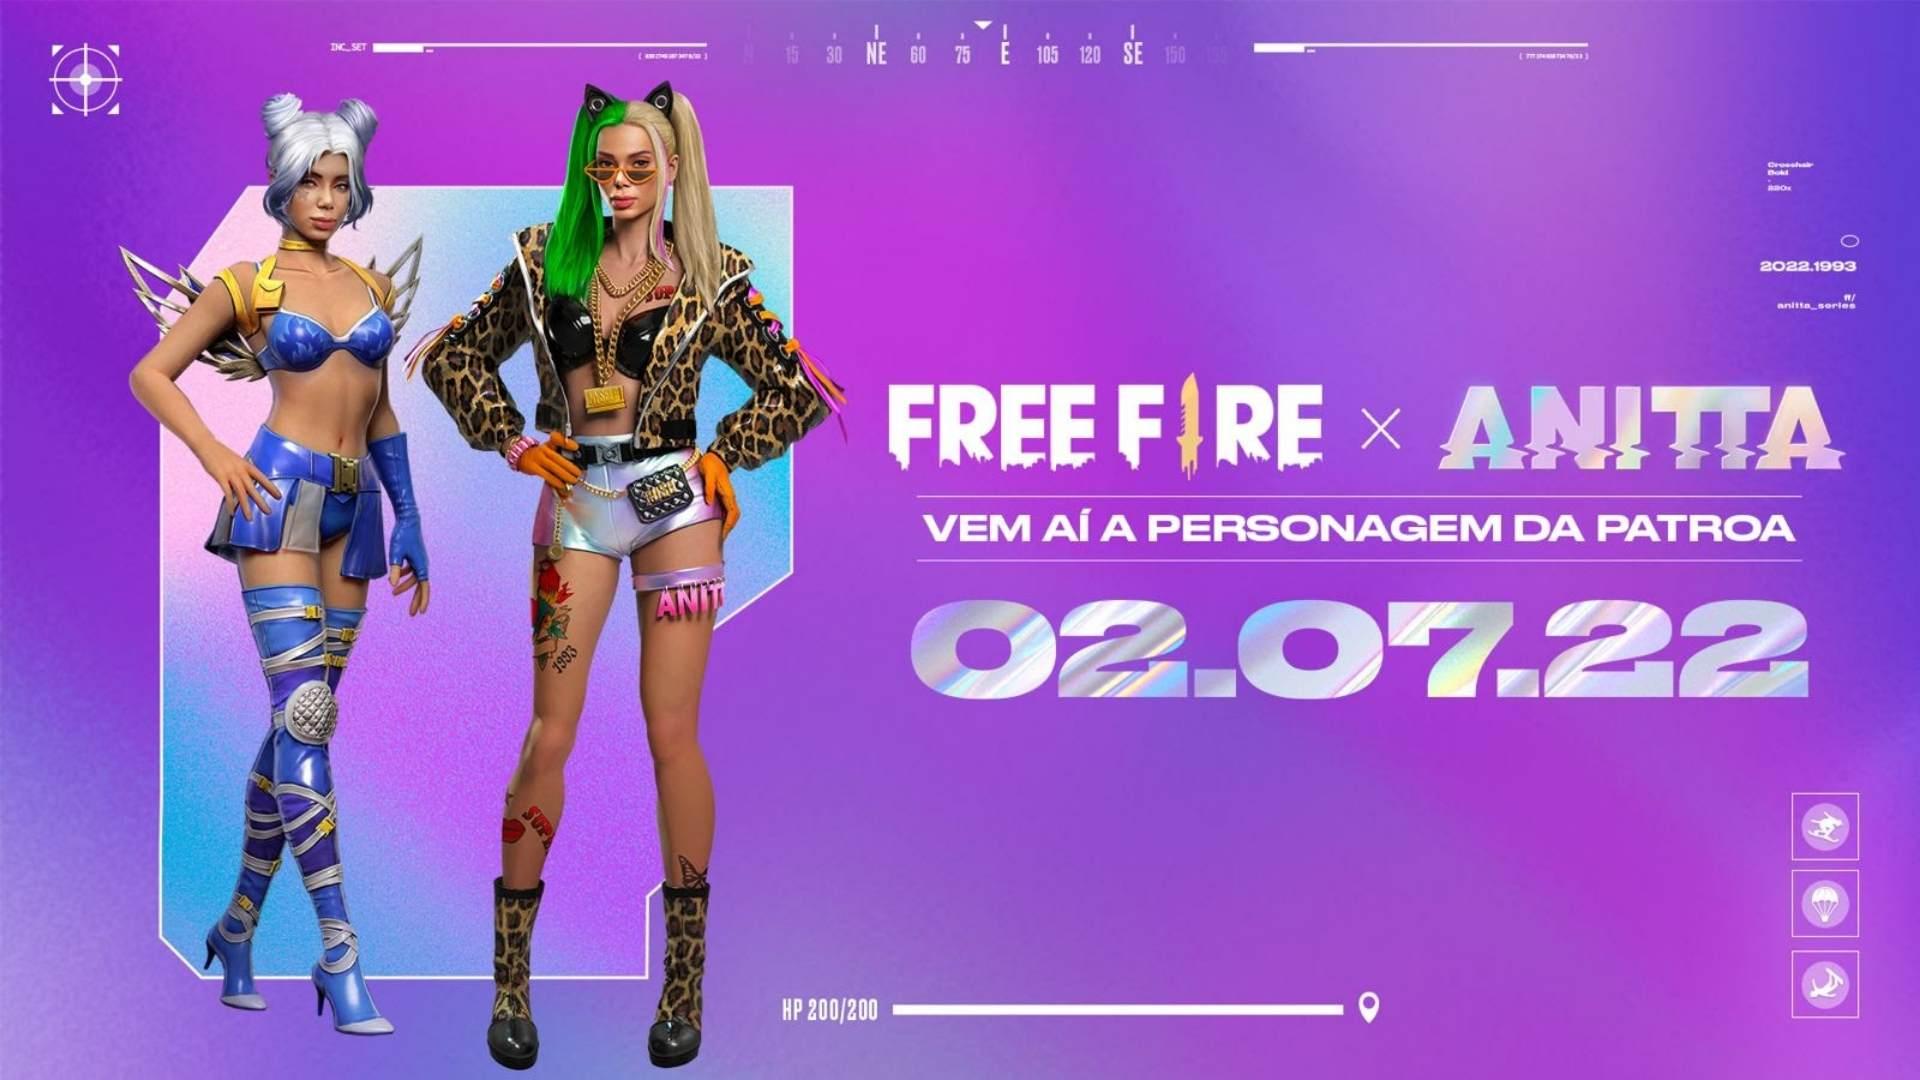 Anitta chega ao Free Fire em 2 de julho; confira personagem, habilidade e itens “A Patroa”